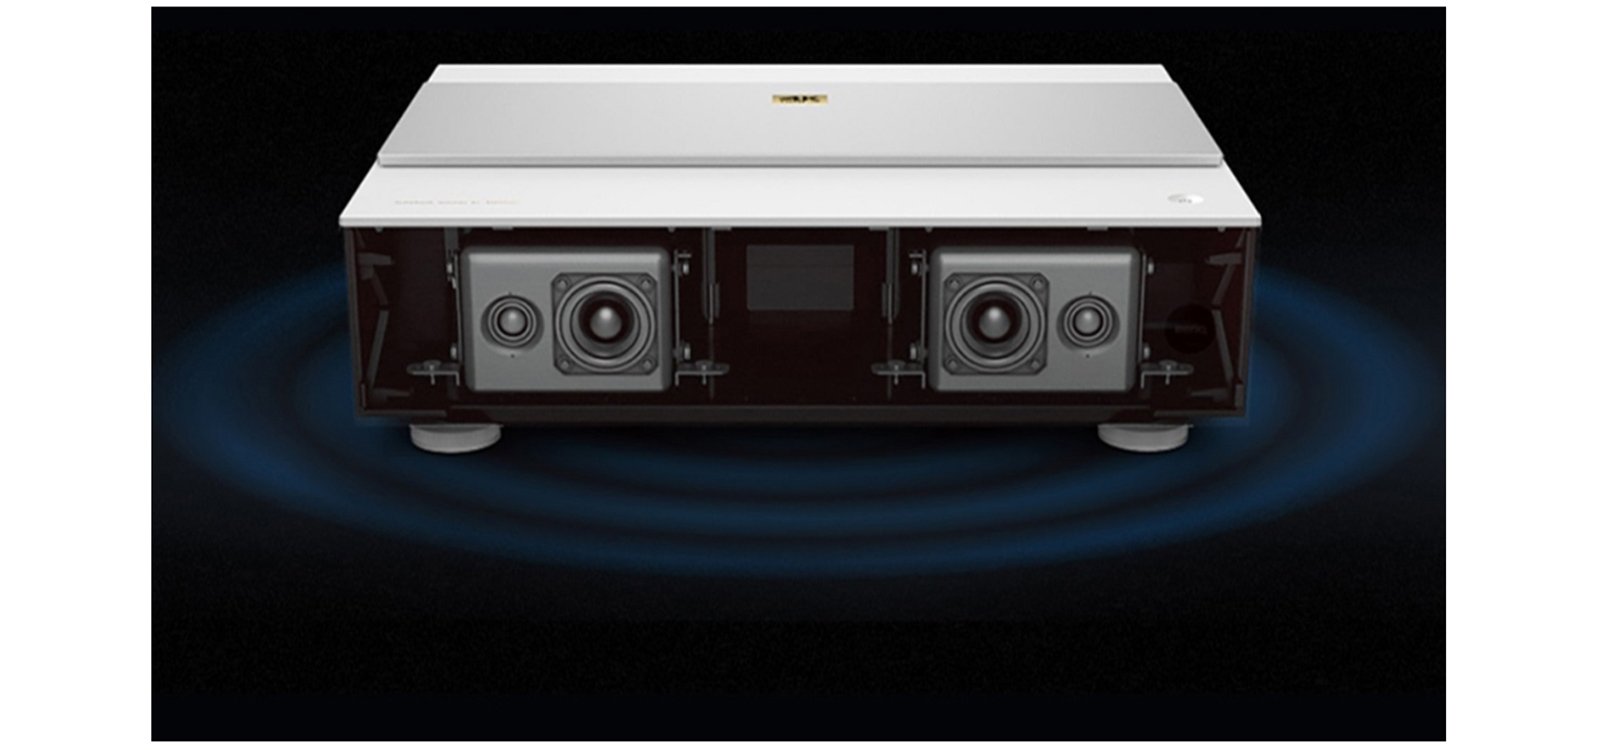 Soundqualität des neuen Laser Beamers von BenQ dank trevolo Lautsprechern